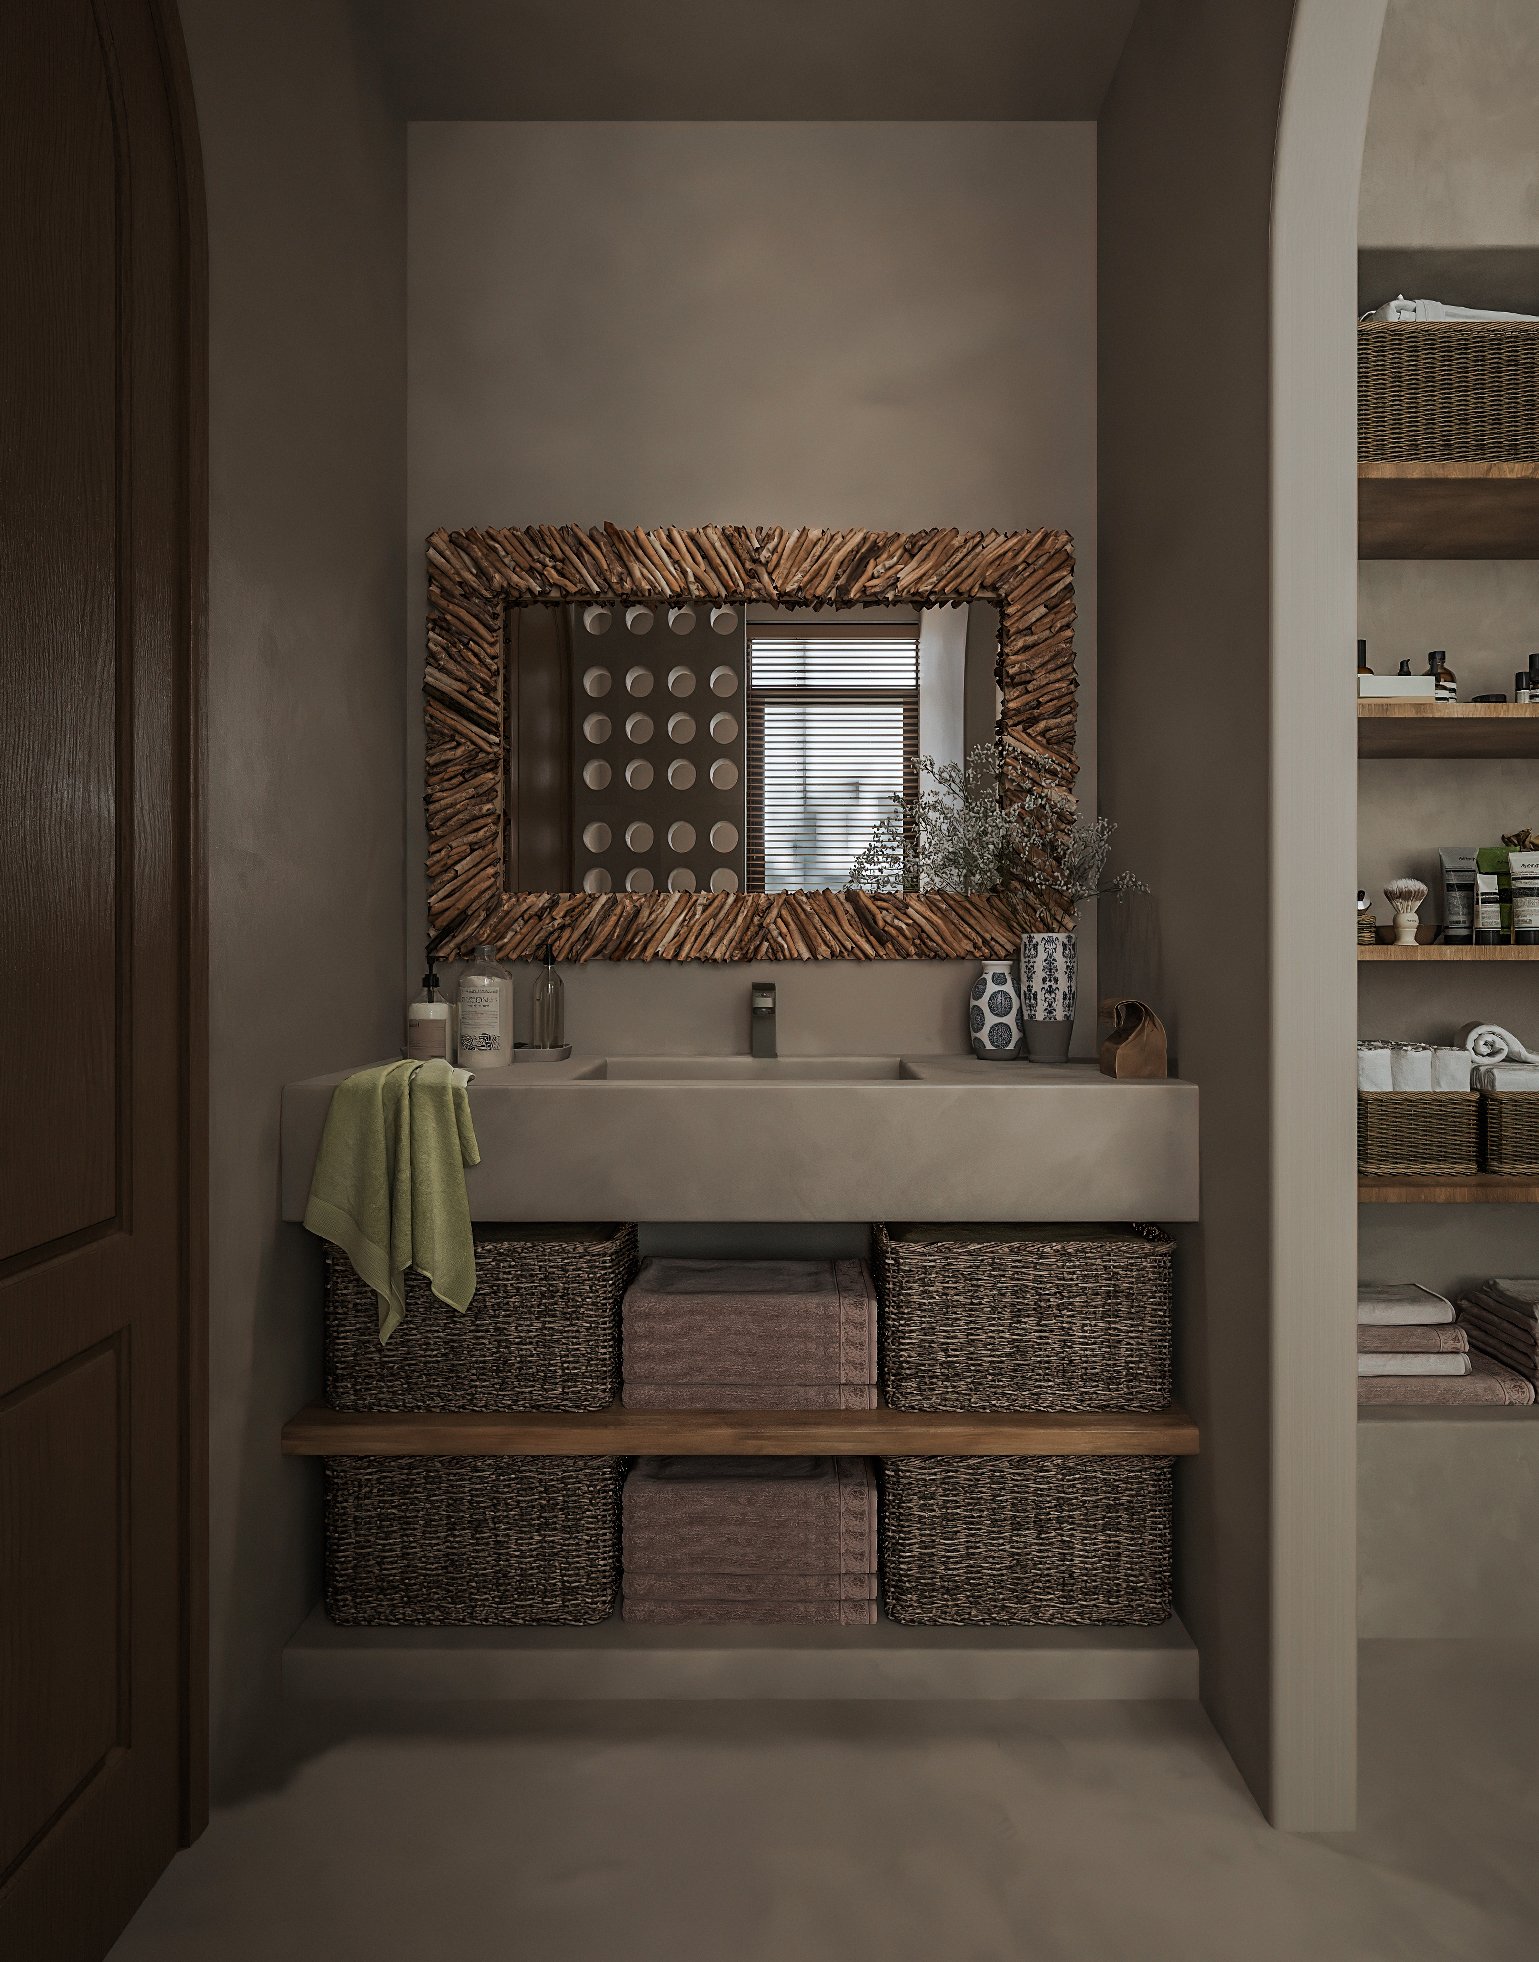 Phòng tắm, vệ sinh gọn gàng nhờ hệ kệ gỗ gắn tường và những giỏ liễu gai đan lát thủ công, tạo cảm giác thân thiện, gần gũi với thiên nhiên.